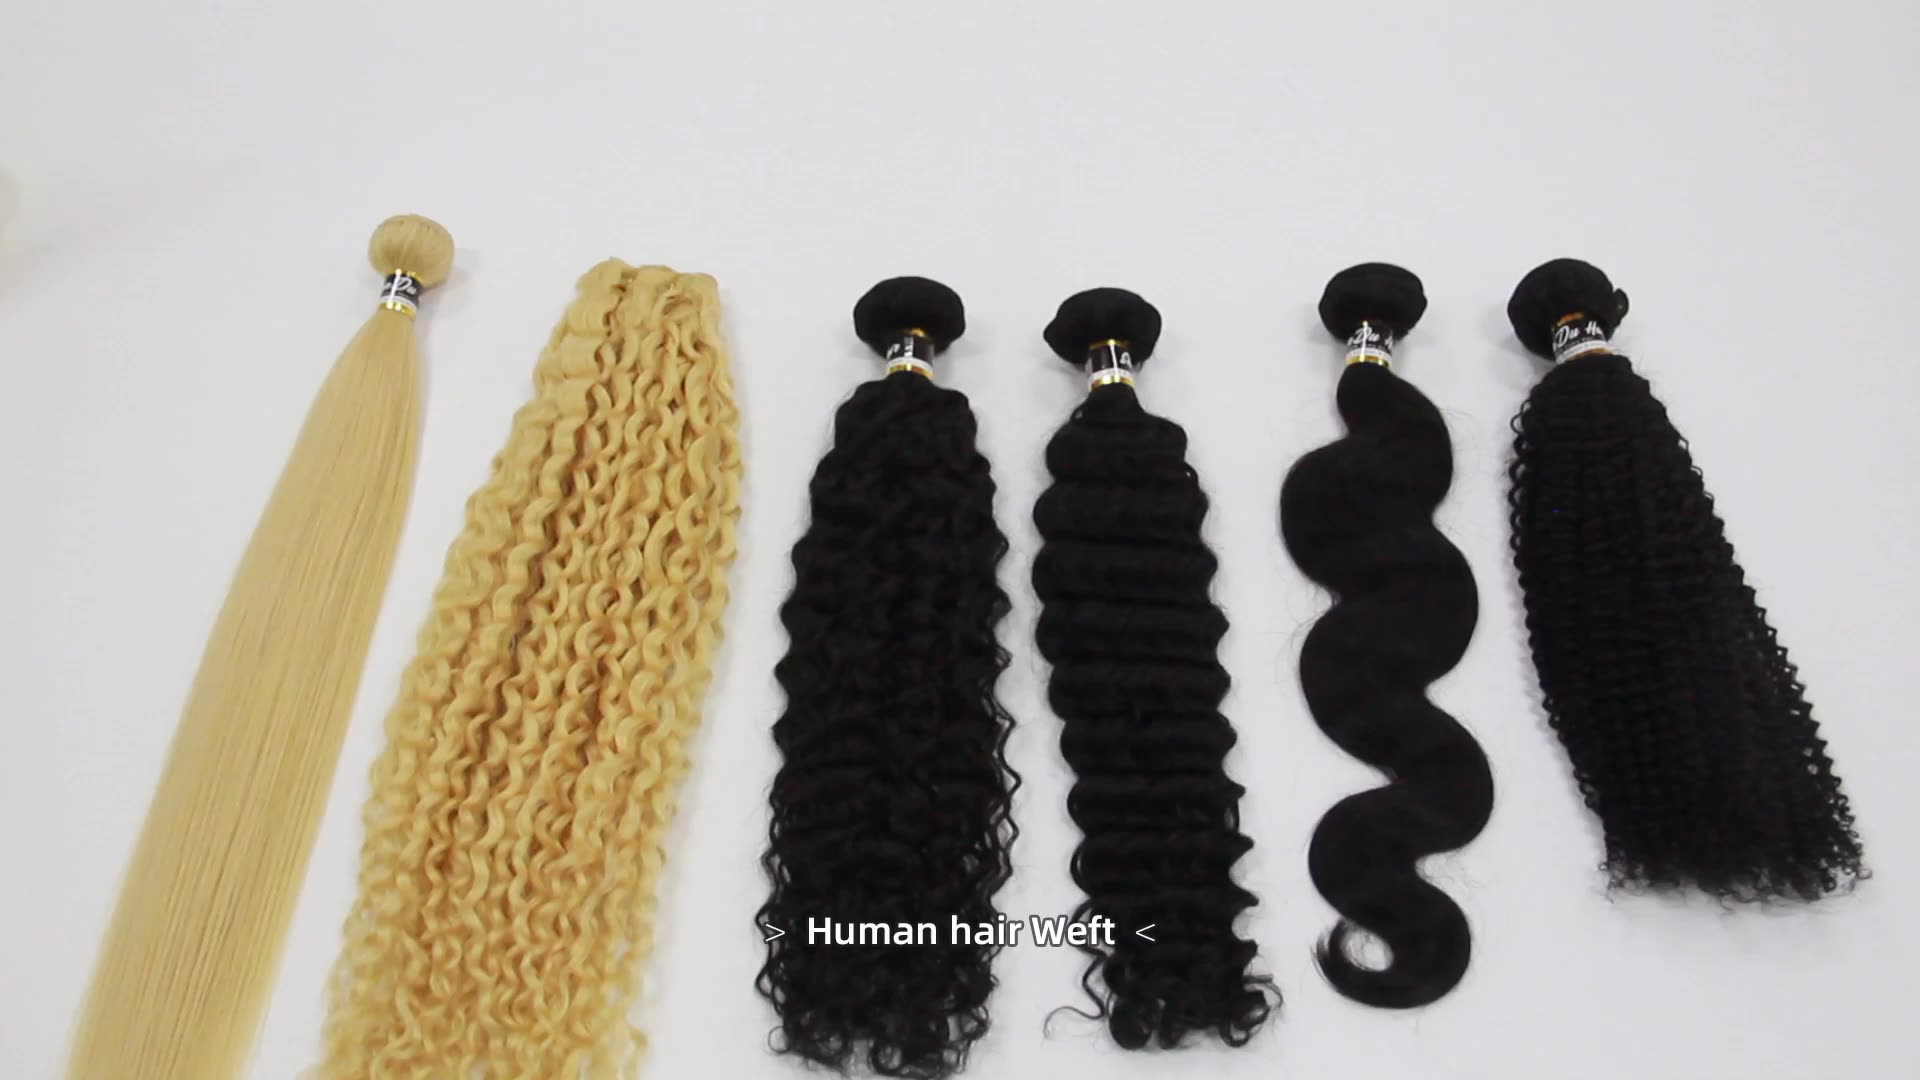 Nagelhaut ausgerichtet Jungfrau Haar Roh indischer Großhandel natürliche brasilianische Remy Haarextension lockig billig menschliches Haar Bundles Anbieter1